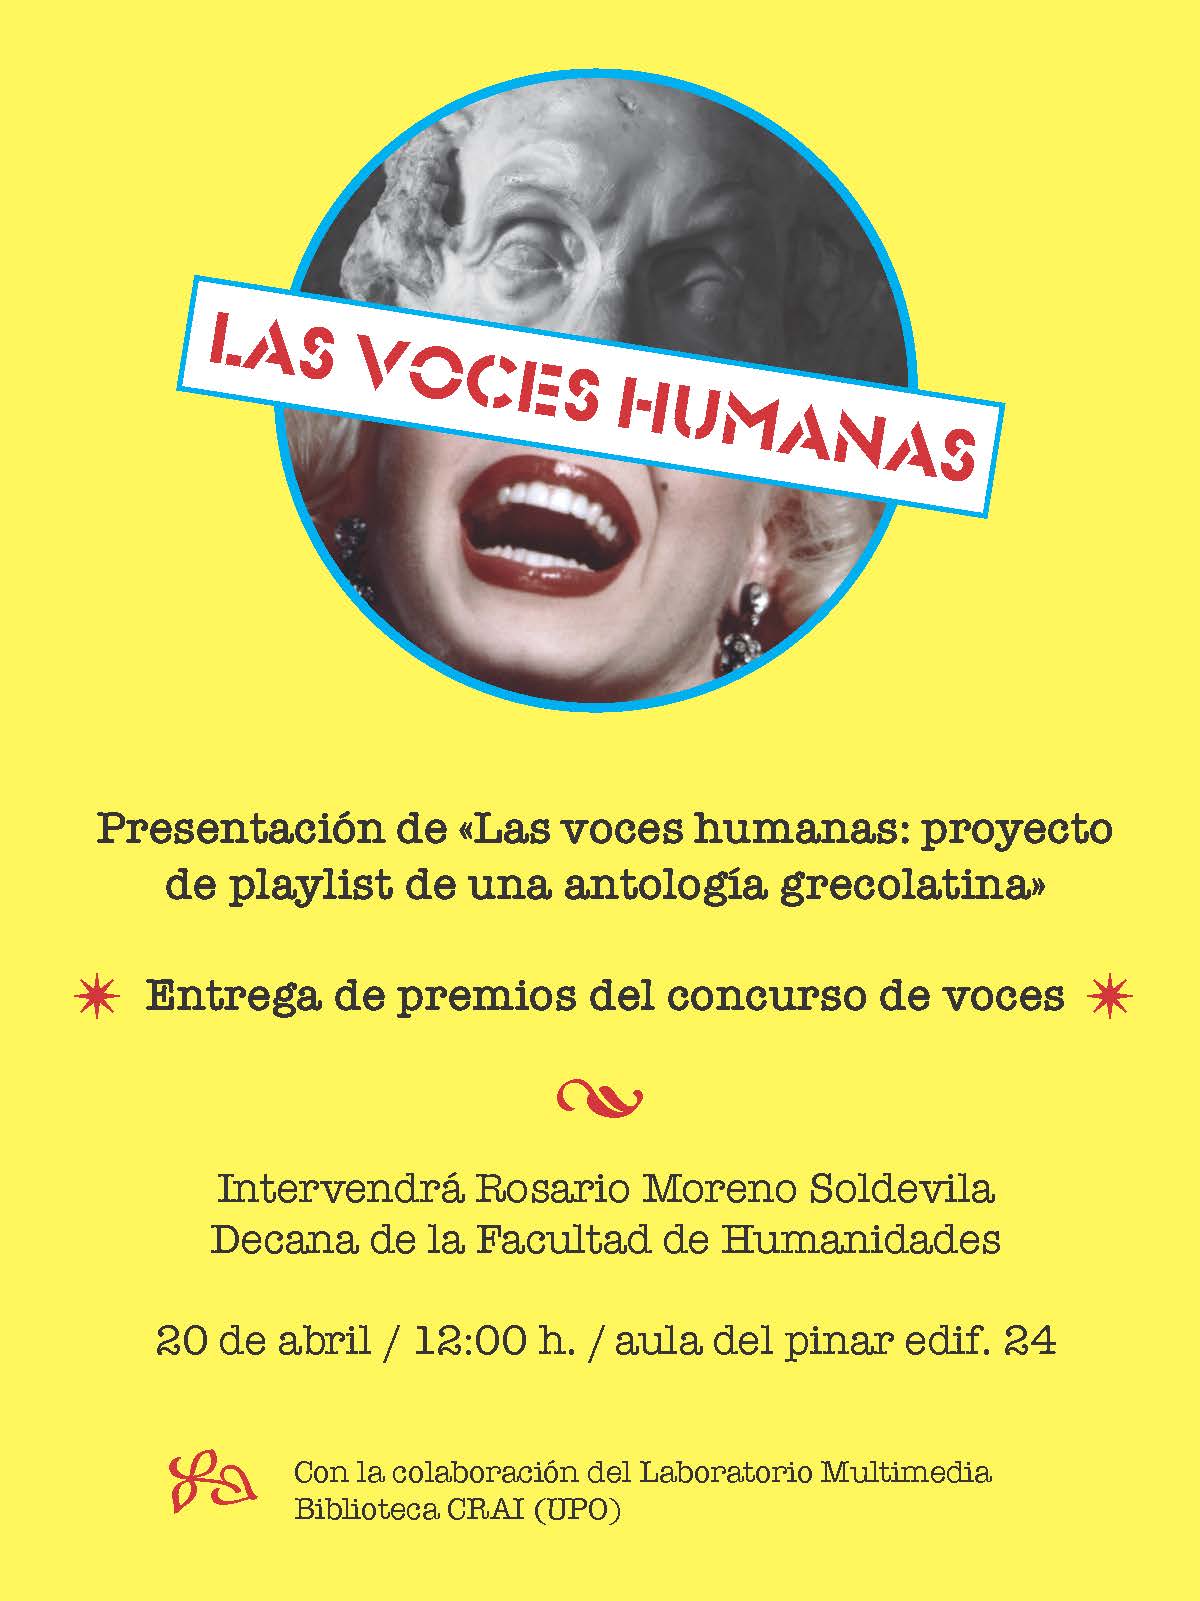 El proyecto "Las voces humanas" se presenta el 20 de abril